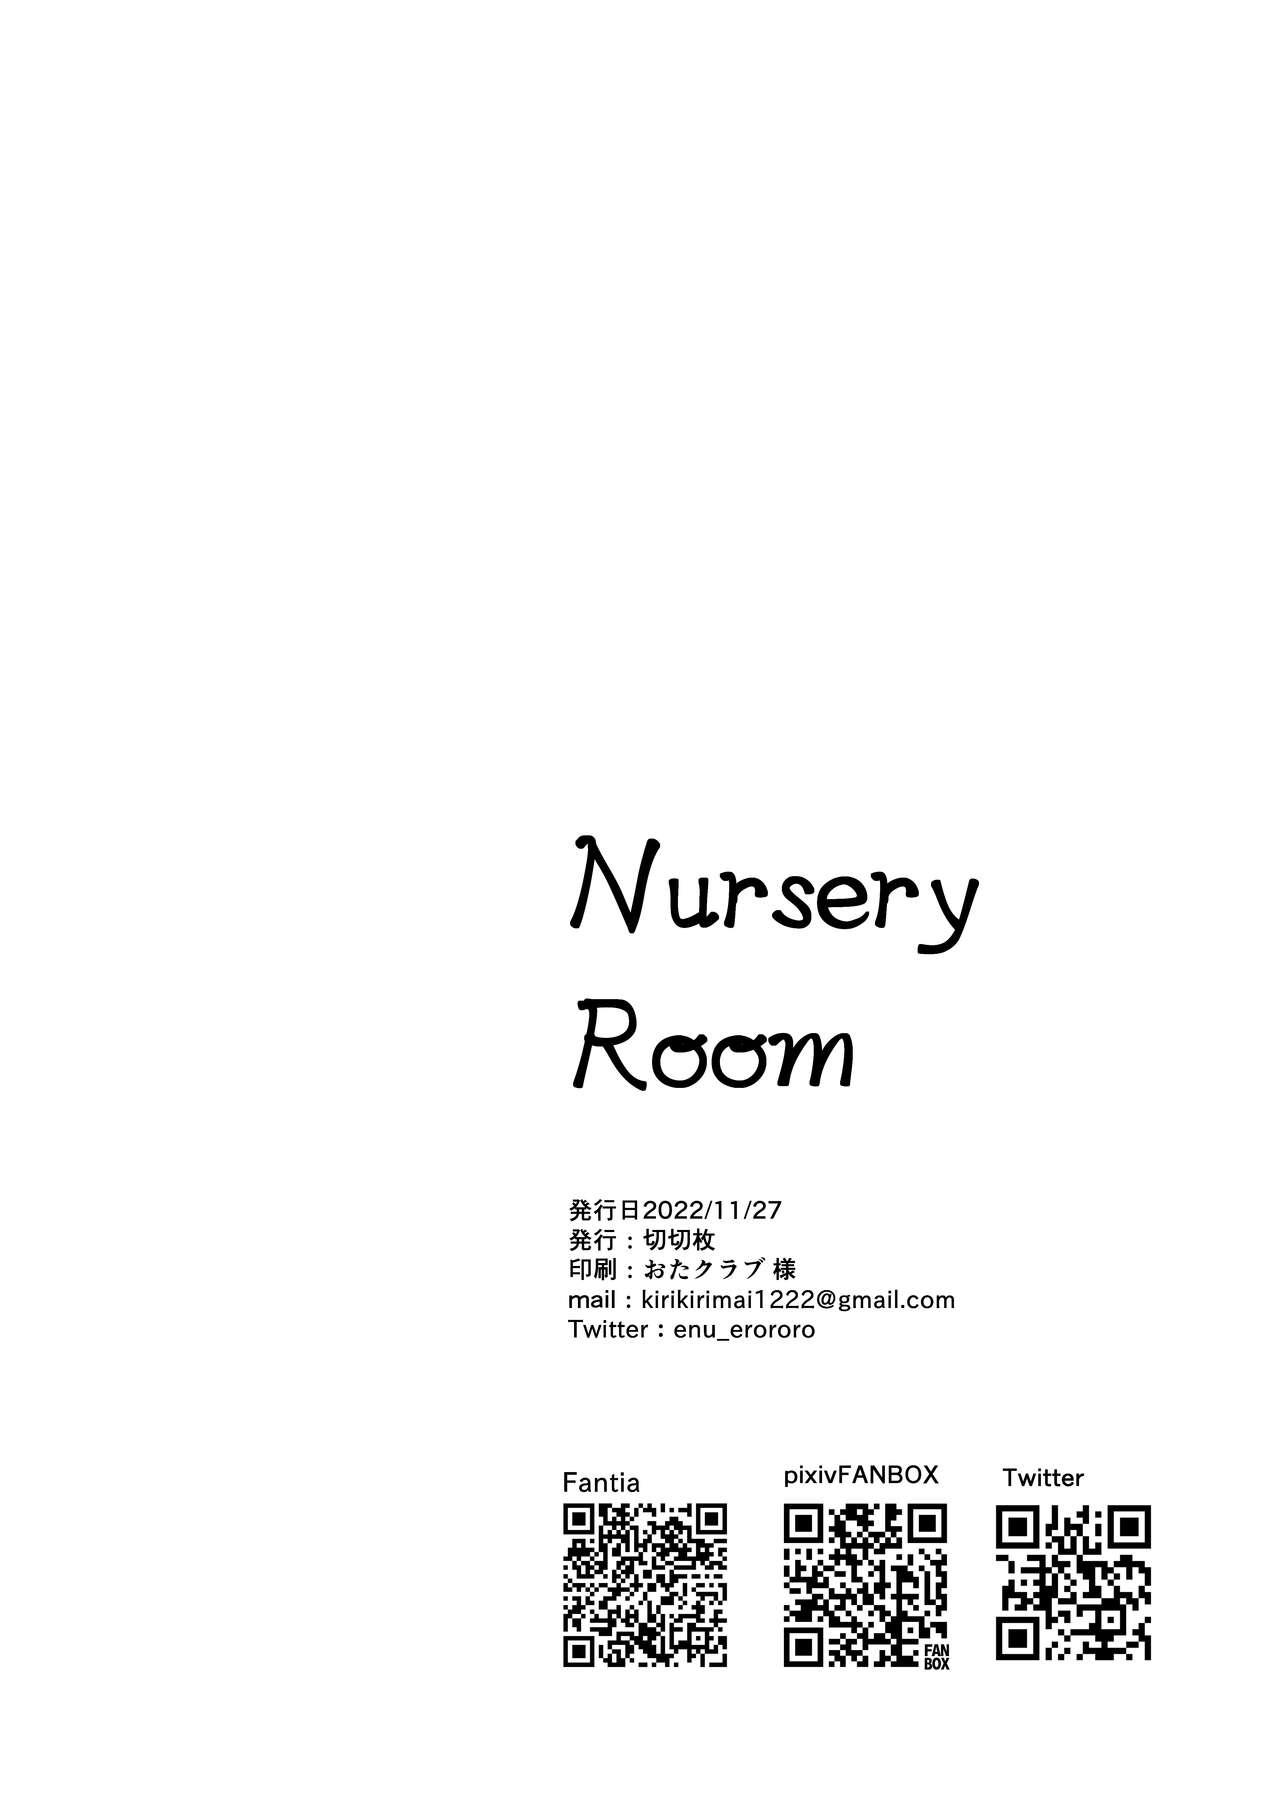 Nursery Room 33